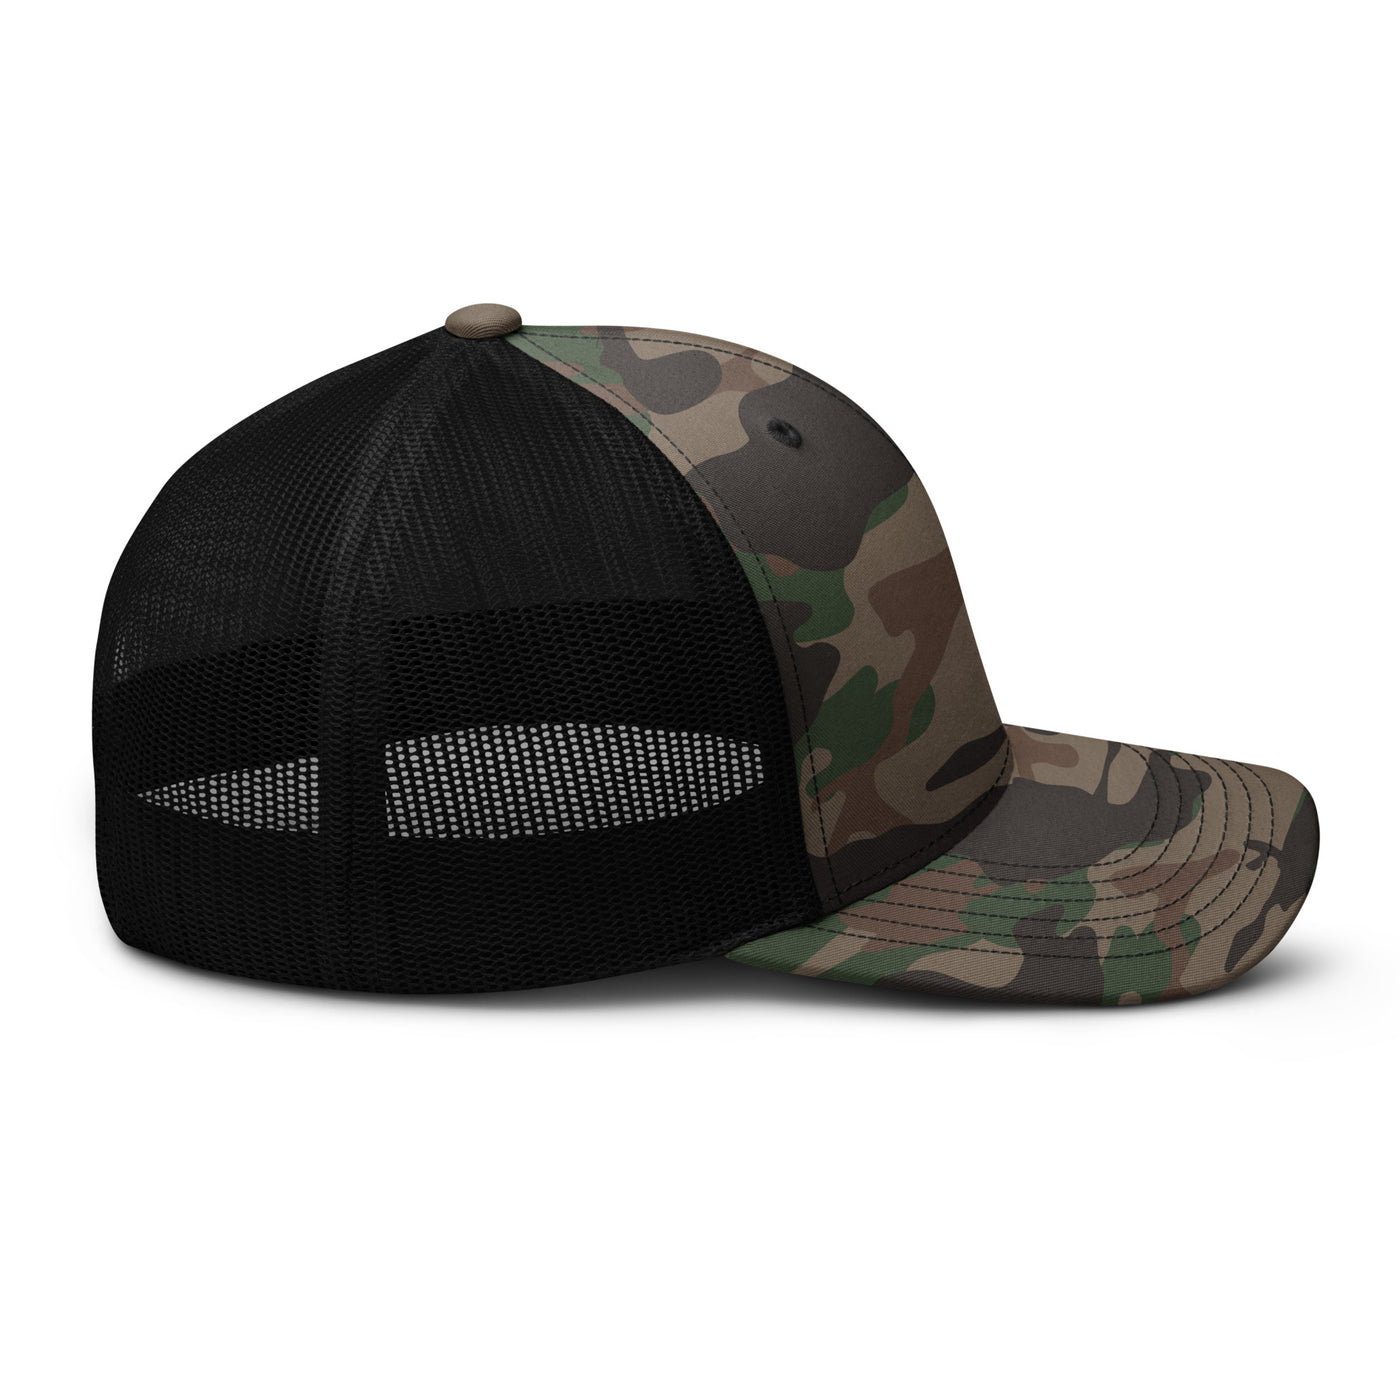 ADJJ Camouflage trucker hat